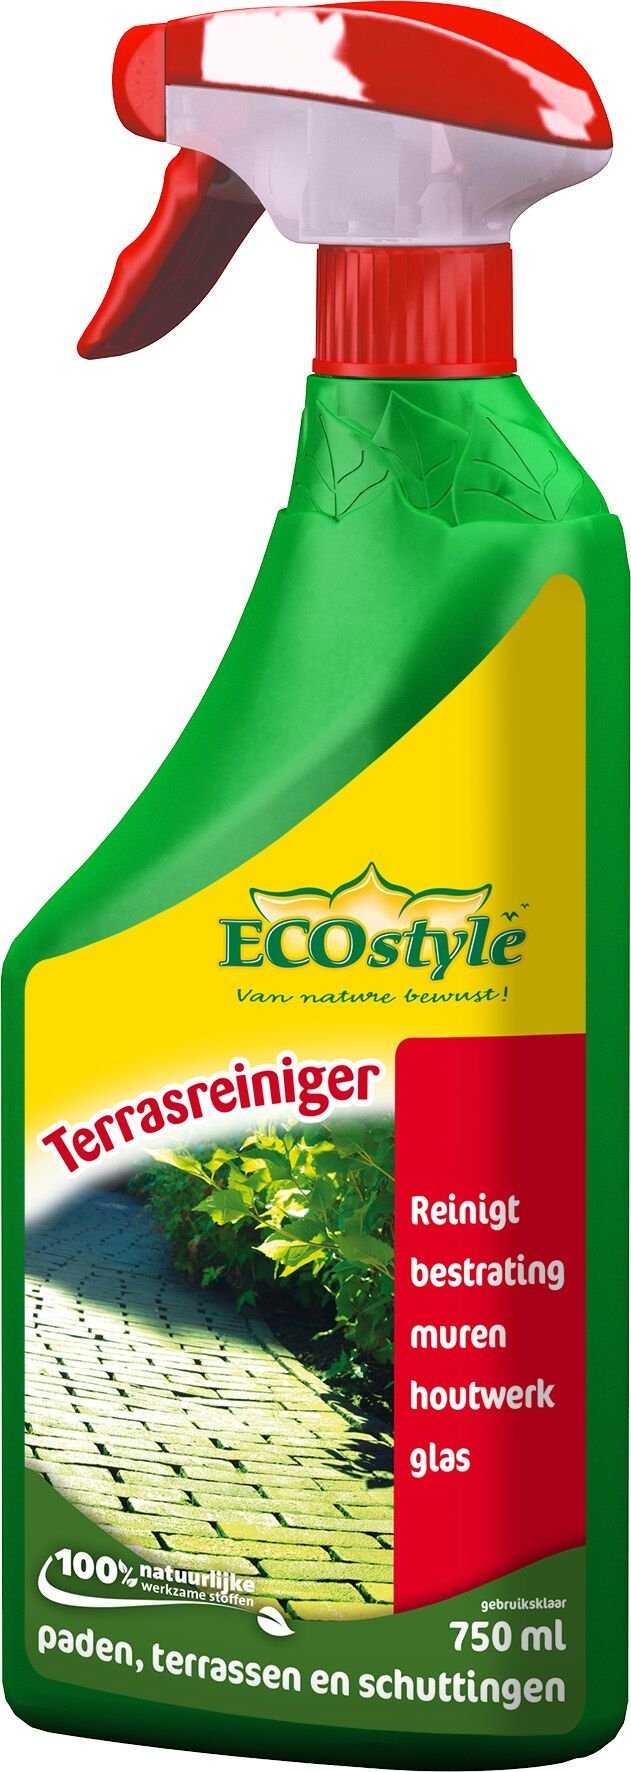 Afbeelding Ecostyle Terrasreiniger Gebruiksklaar - Algen- Mosbestrijding - 750 ml door Tuinartikeltotaal.nl